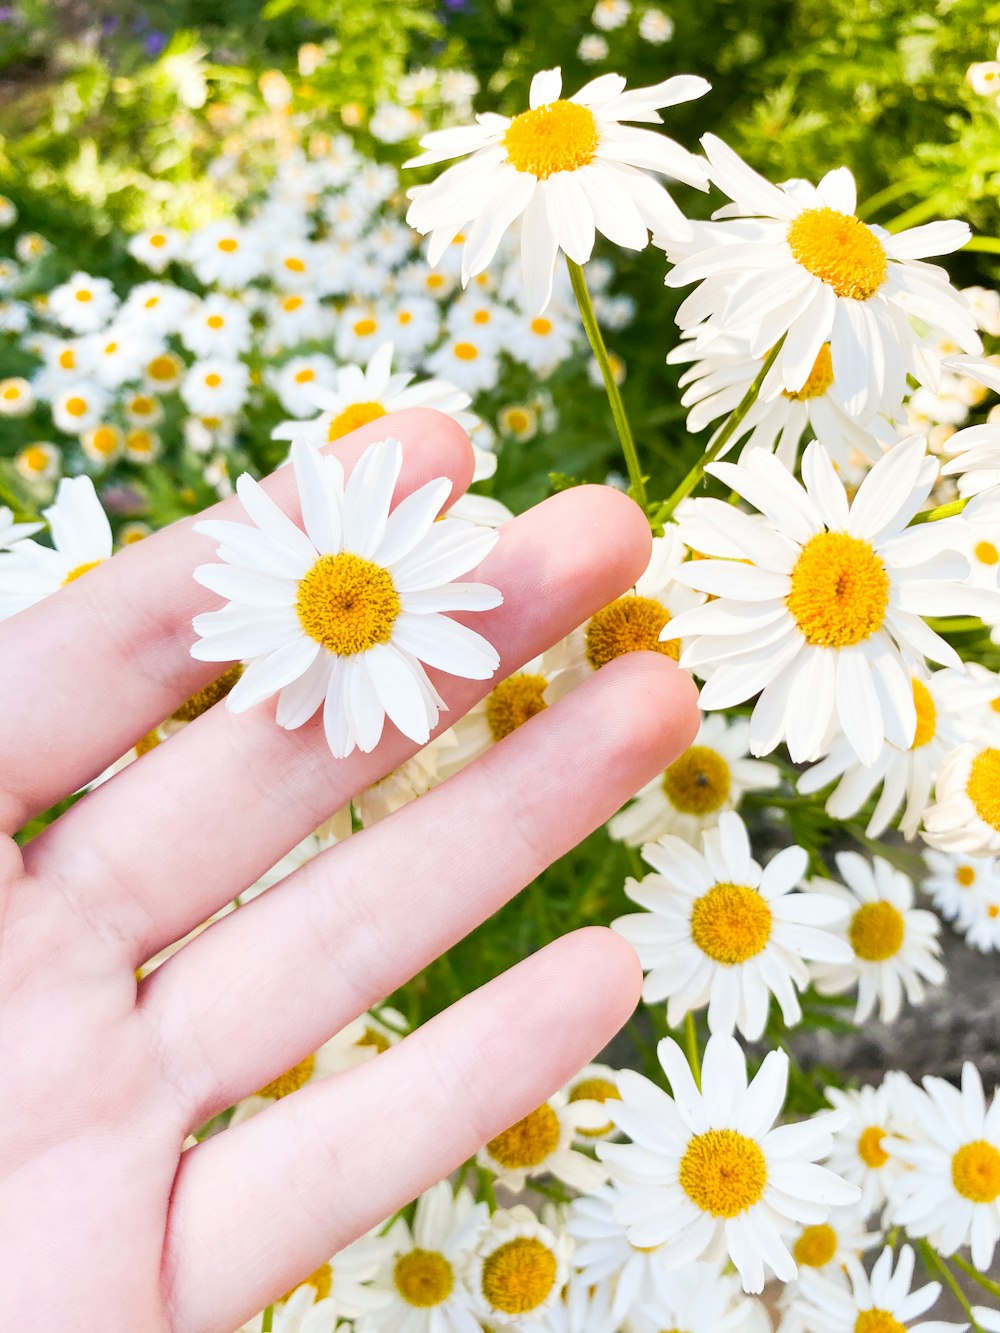 personne tenant des fleurs blanches et jaunes